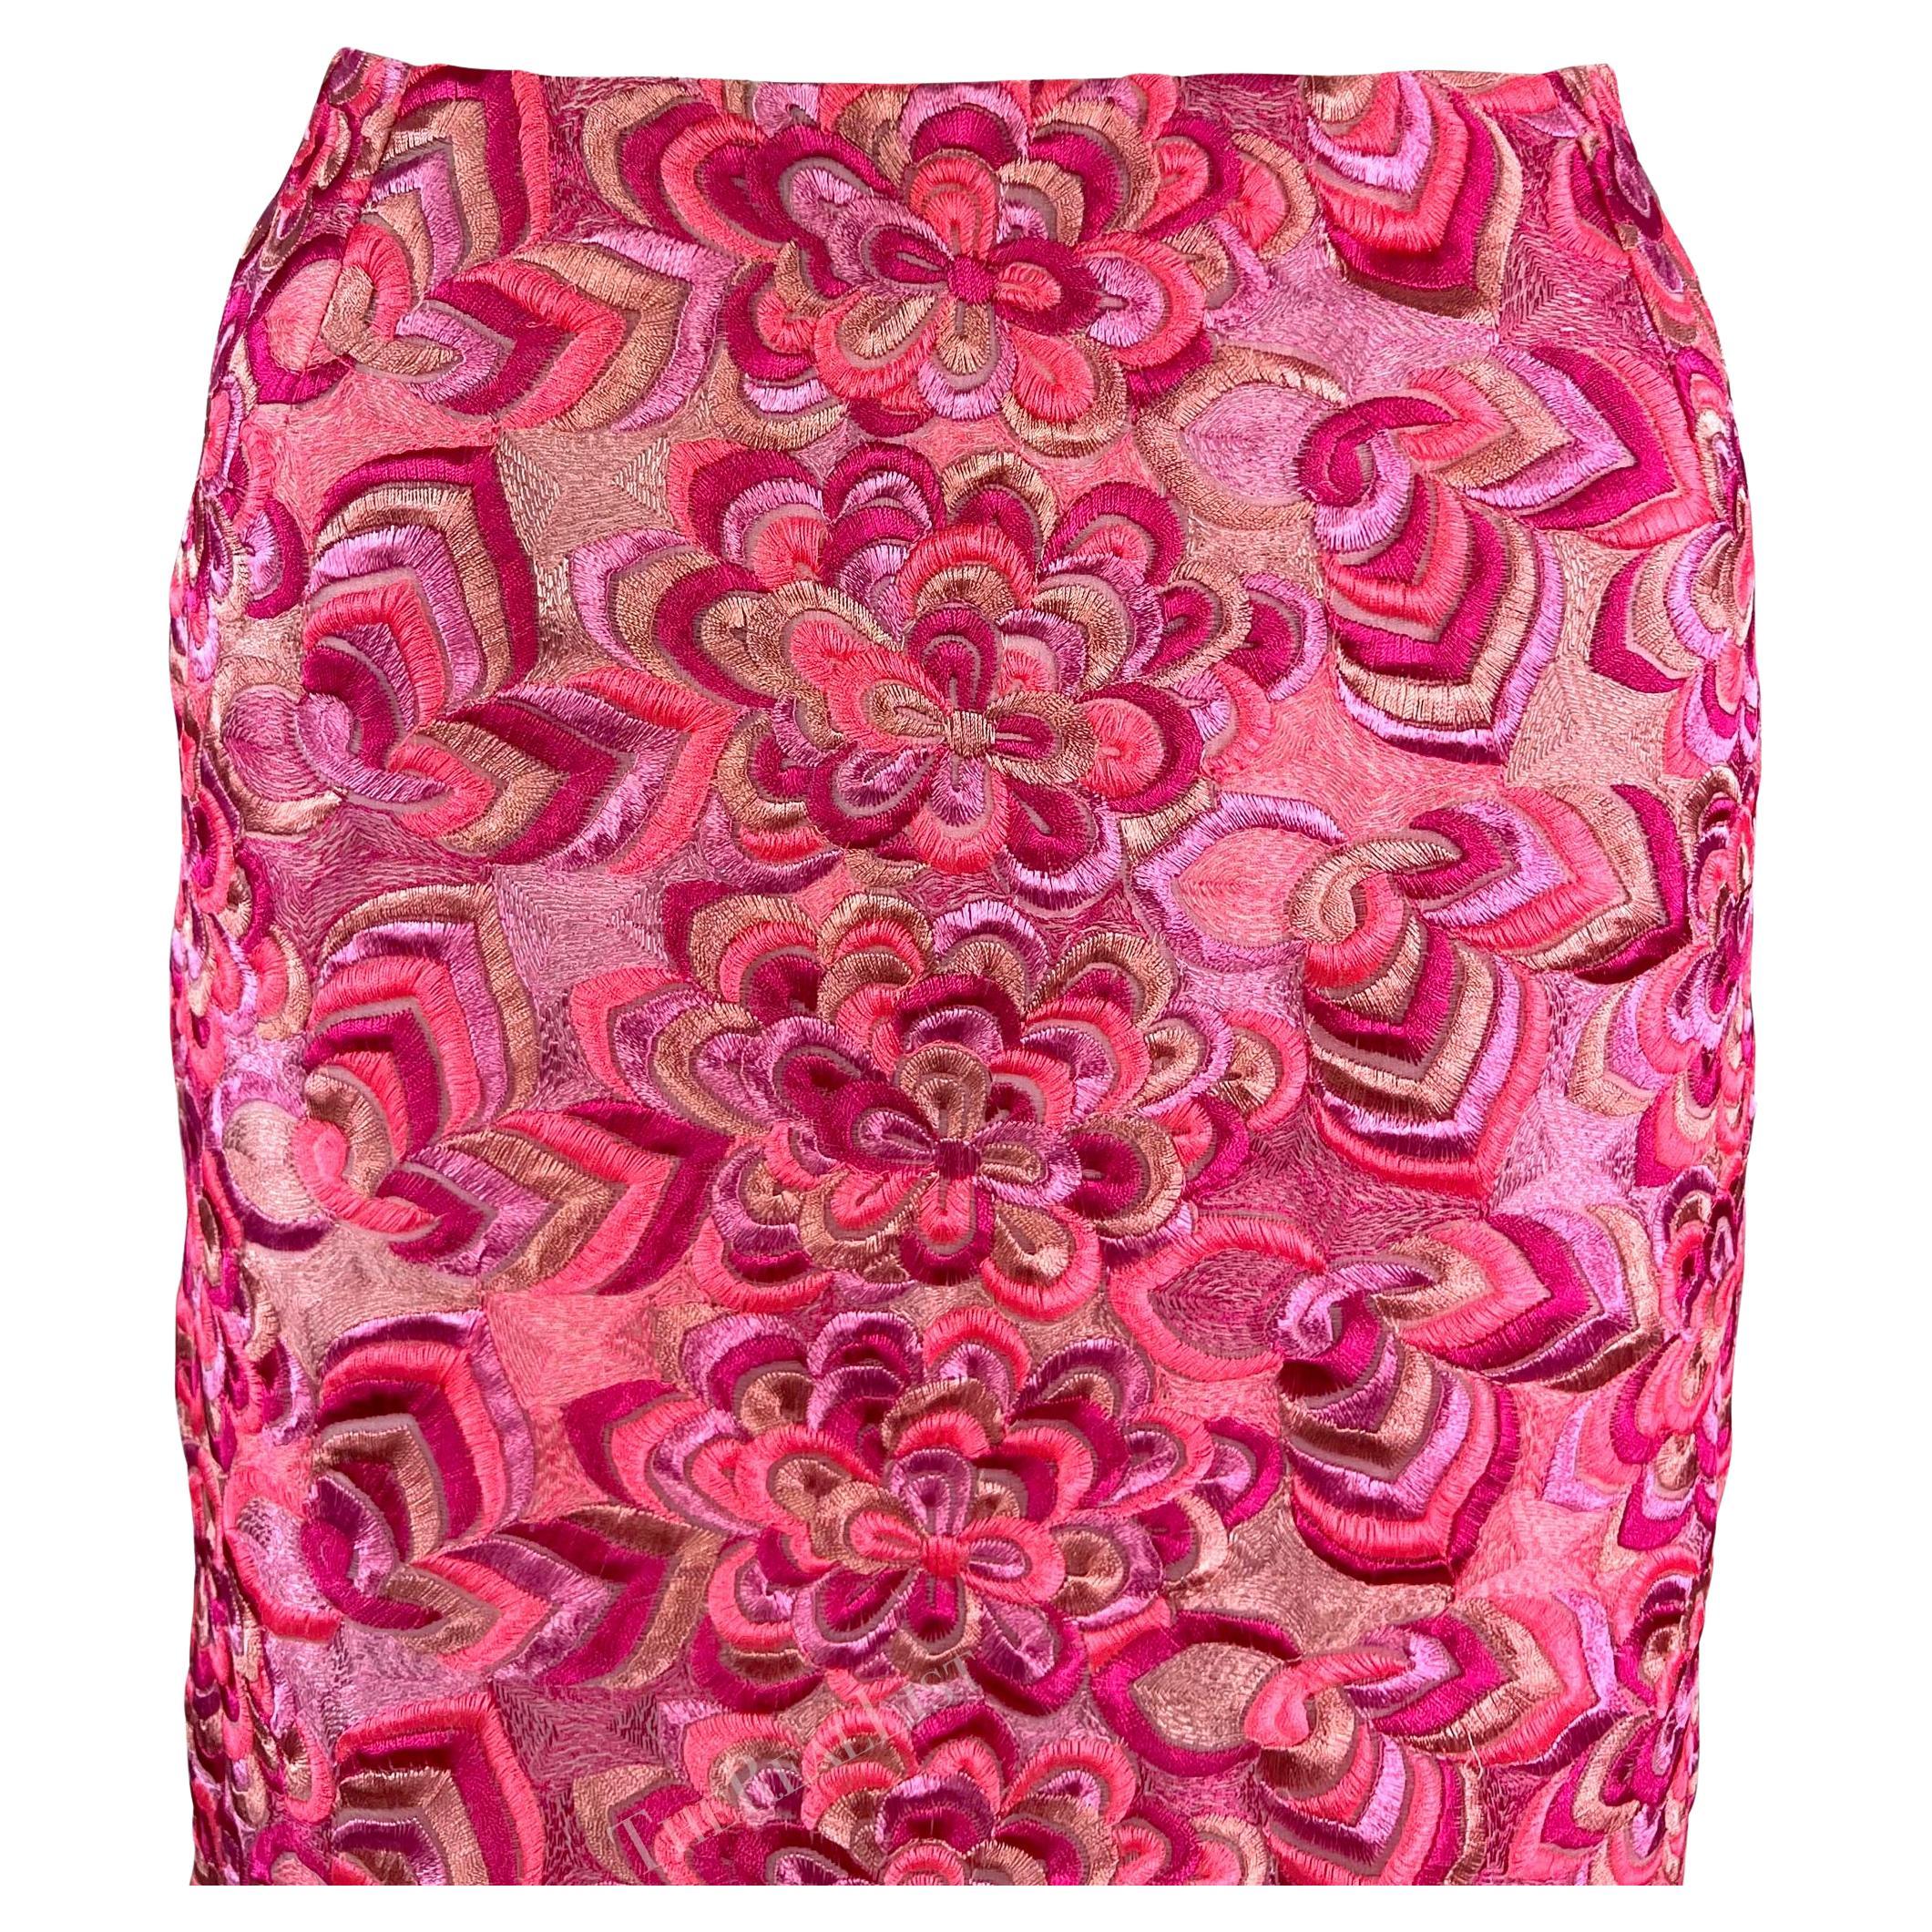 Présentation d'une jupe rose vif Versace, dessinée par Donatella Versace. Issue de la collection phare printemps/été 2000 de Donatella, cette jupe est entièrement recouverte de broderies florales complexes. Rarement trouvée, cette beauté de l'an